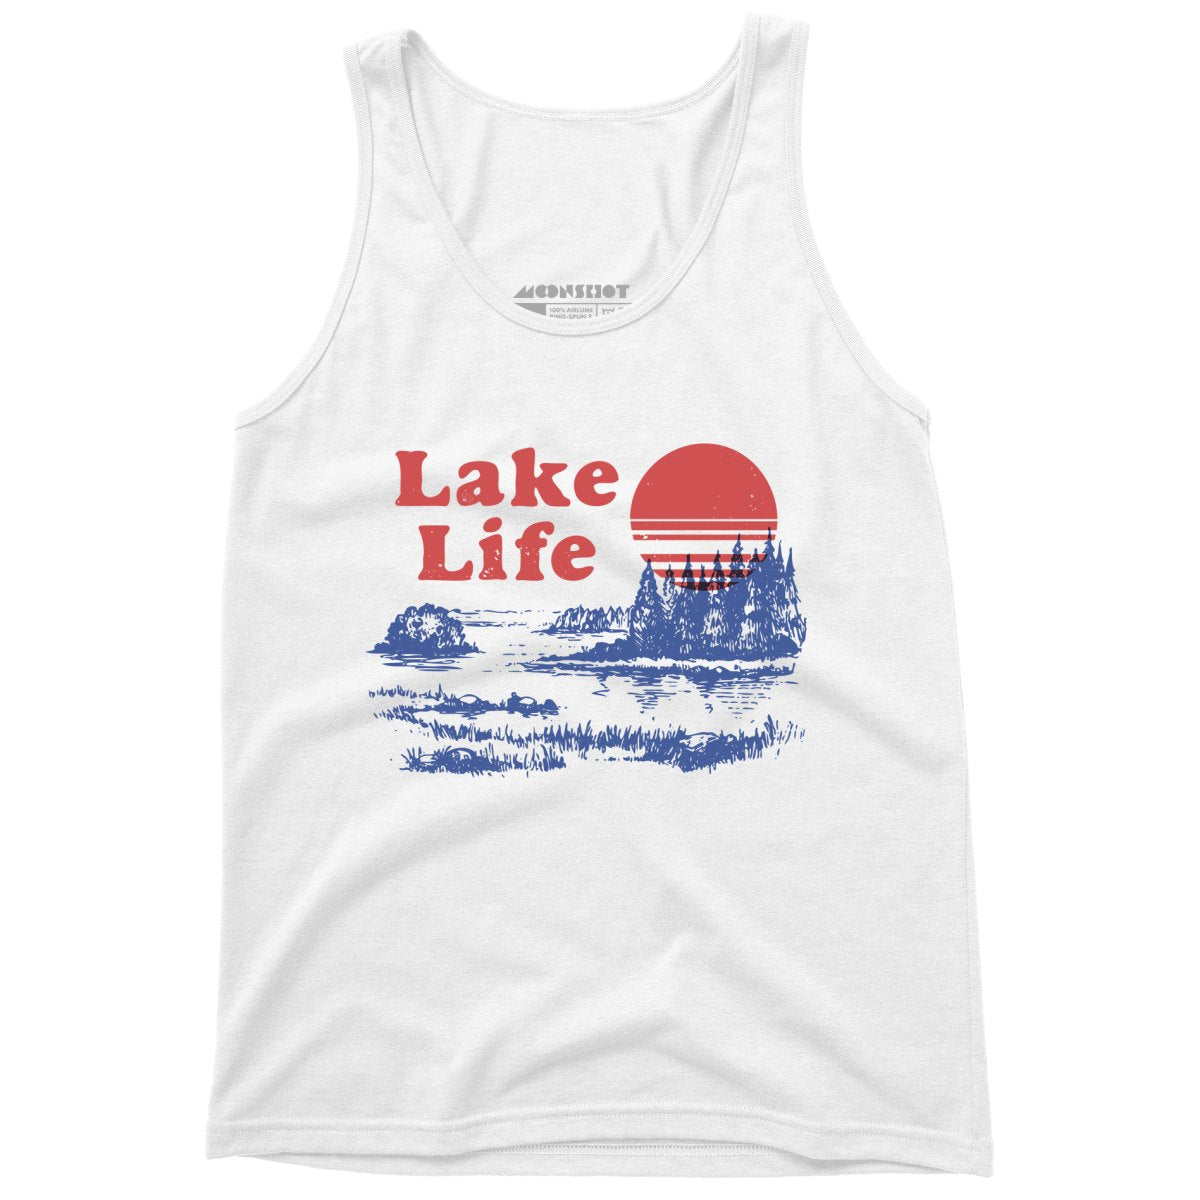 Lake Life - Unisex Tank Top